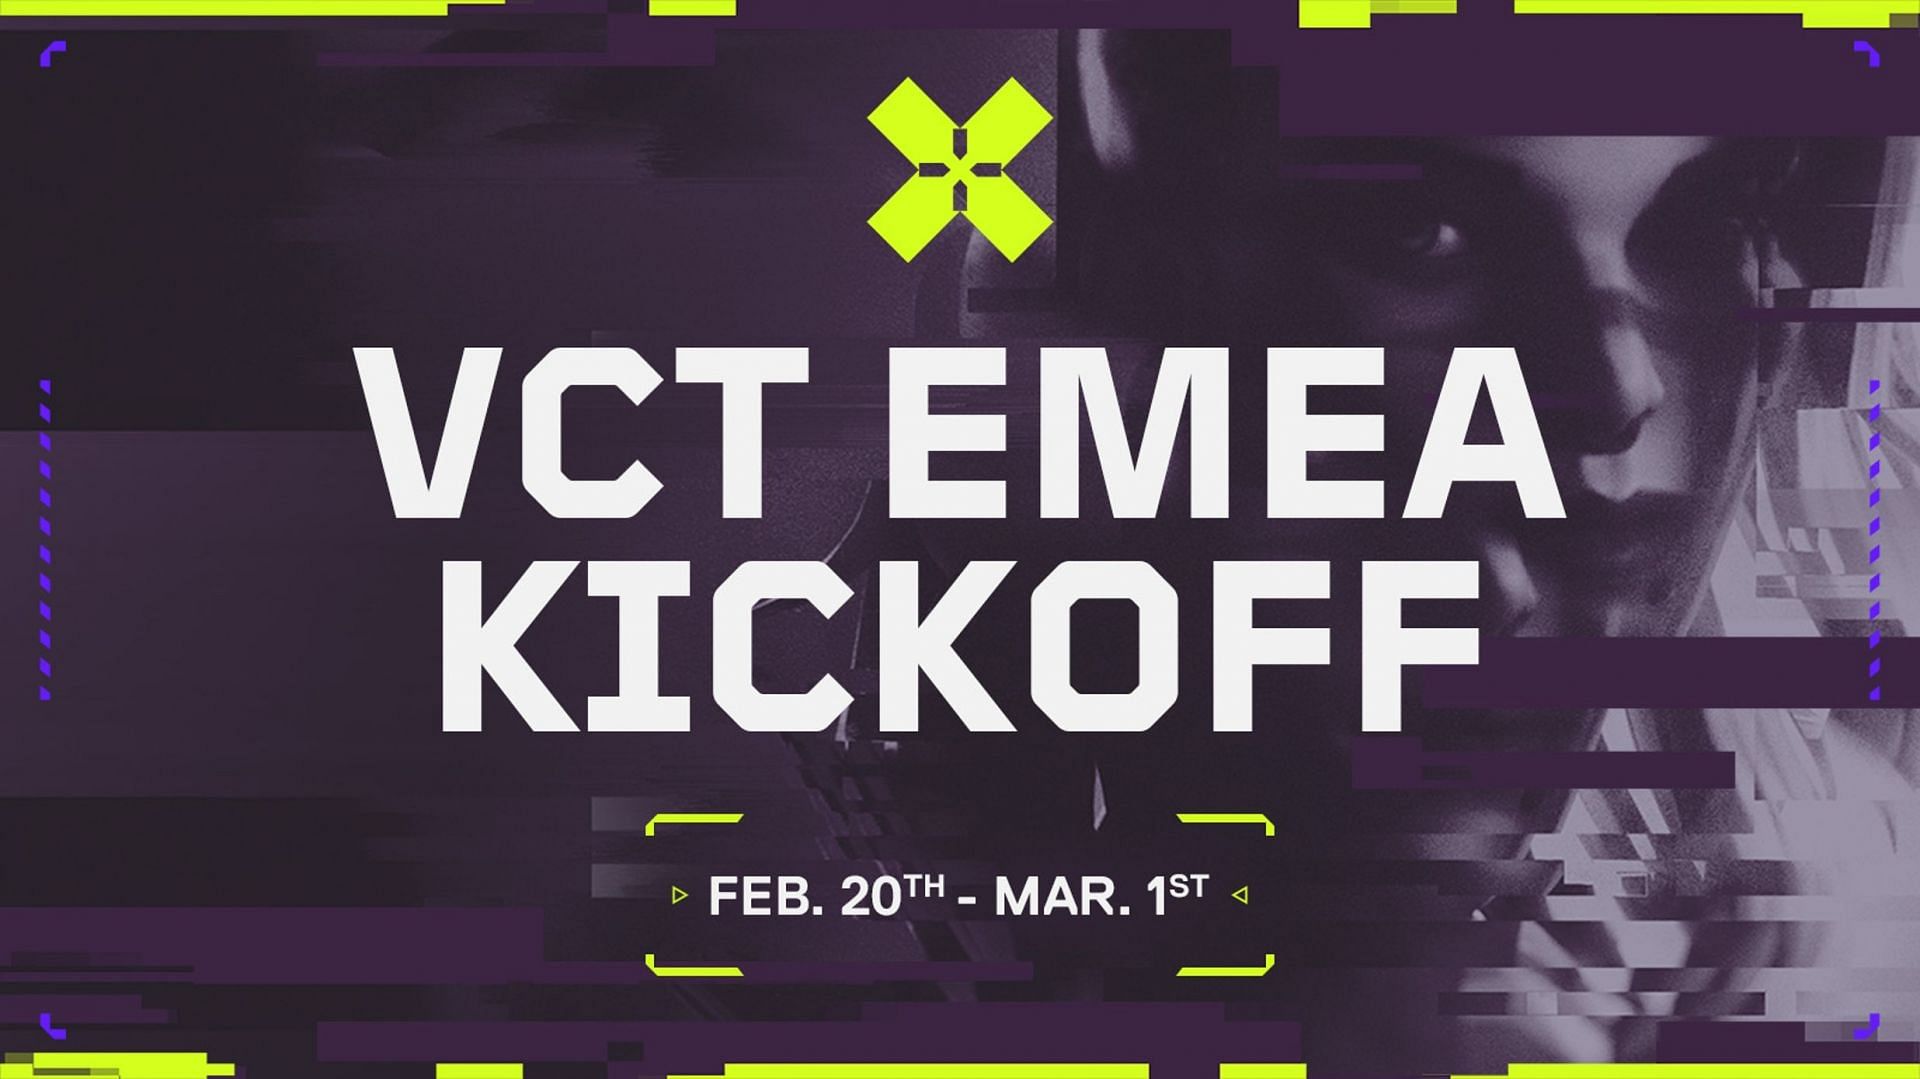 VCT EMEA Kickoff